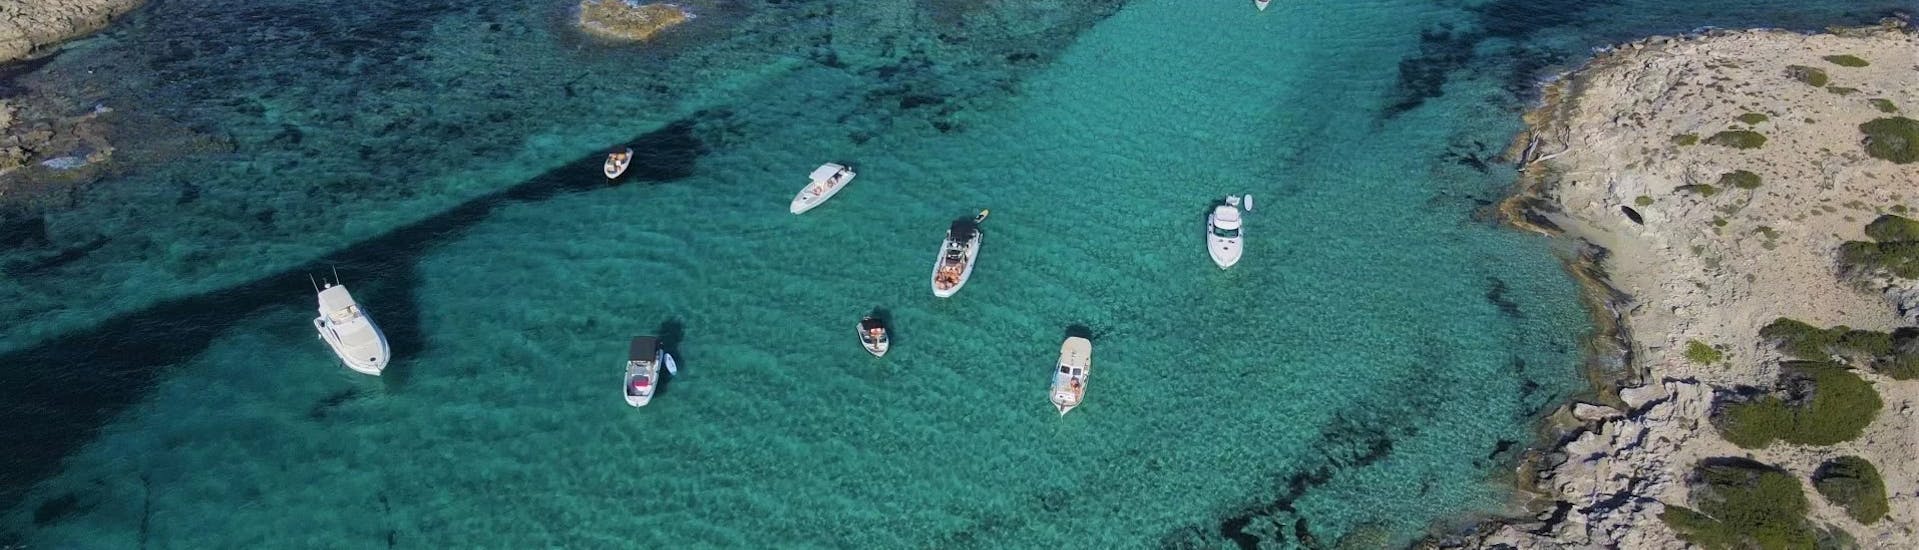 Viste del Noleggio barca a Santa Eulària, Ibiza (fino a 6 persone) senza patente con Eiviboats Ibiza..